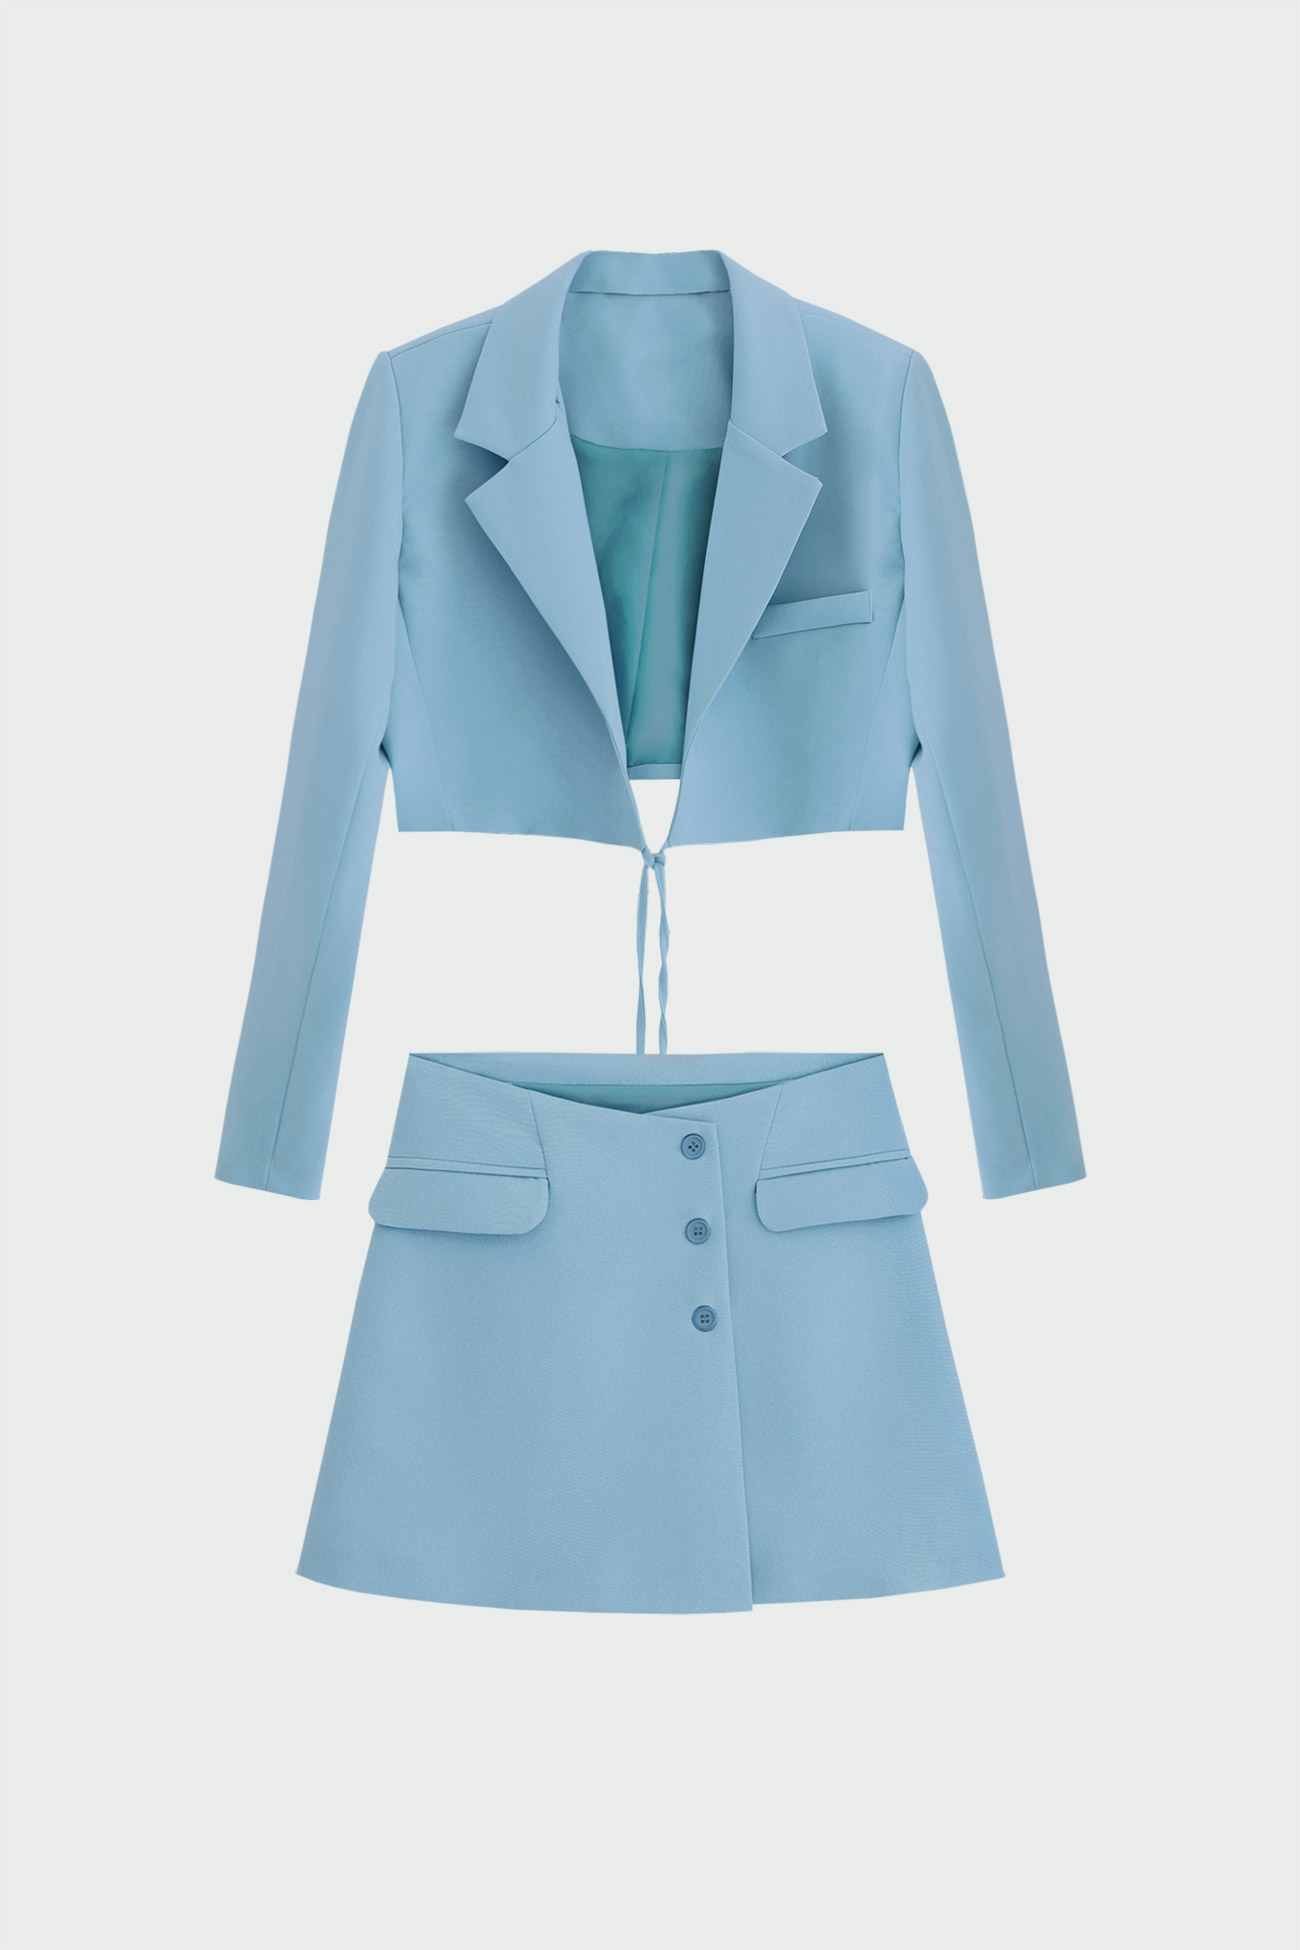 Cep Detaylı Crop Ceket Etek Açık Mavi Kadın Takım